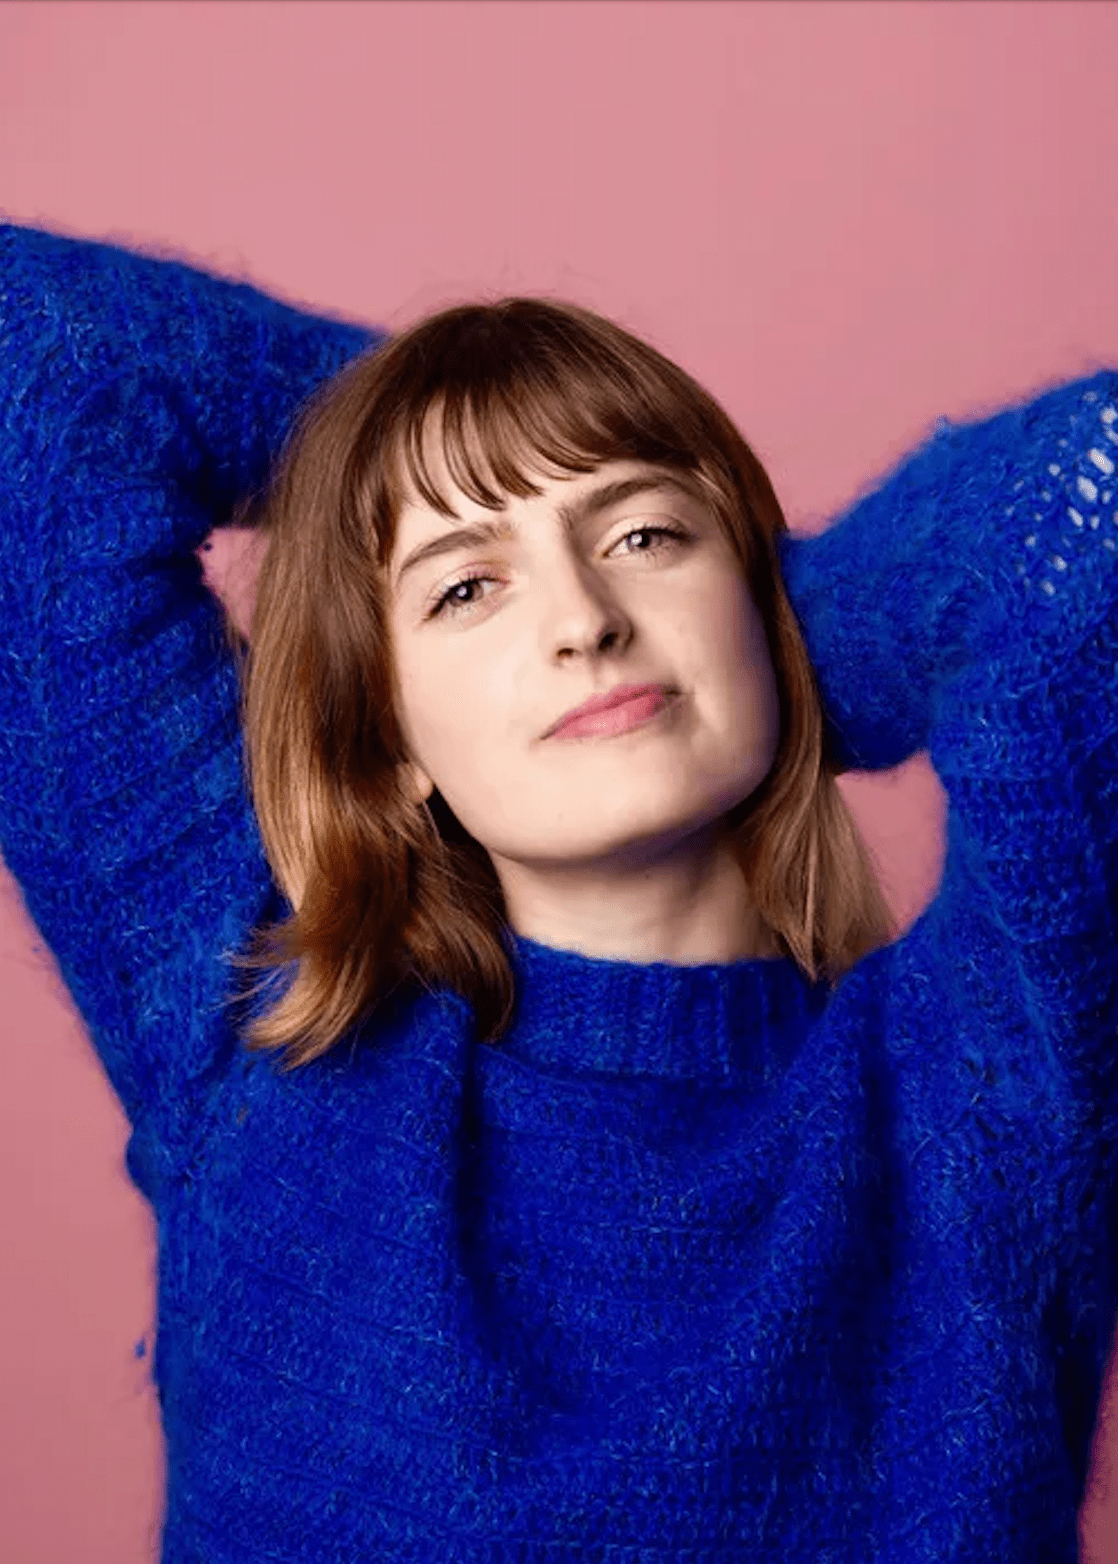 Chloe Troast in a blue sweater